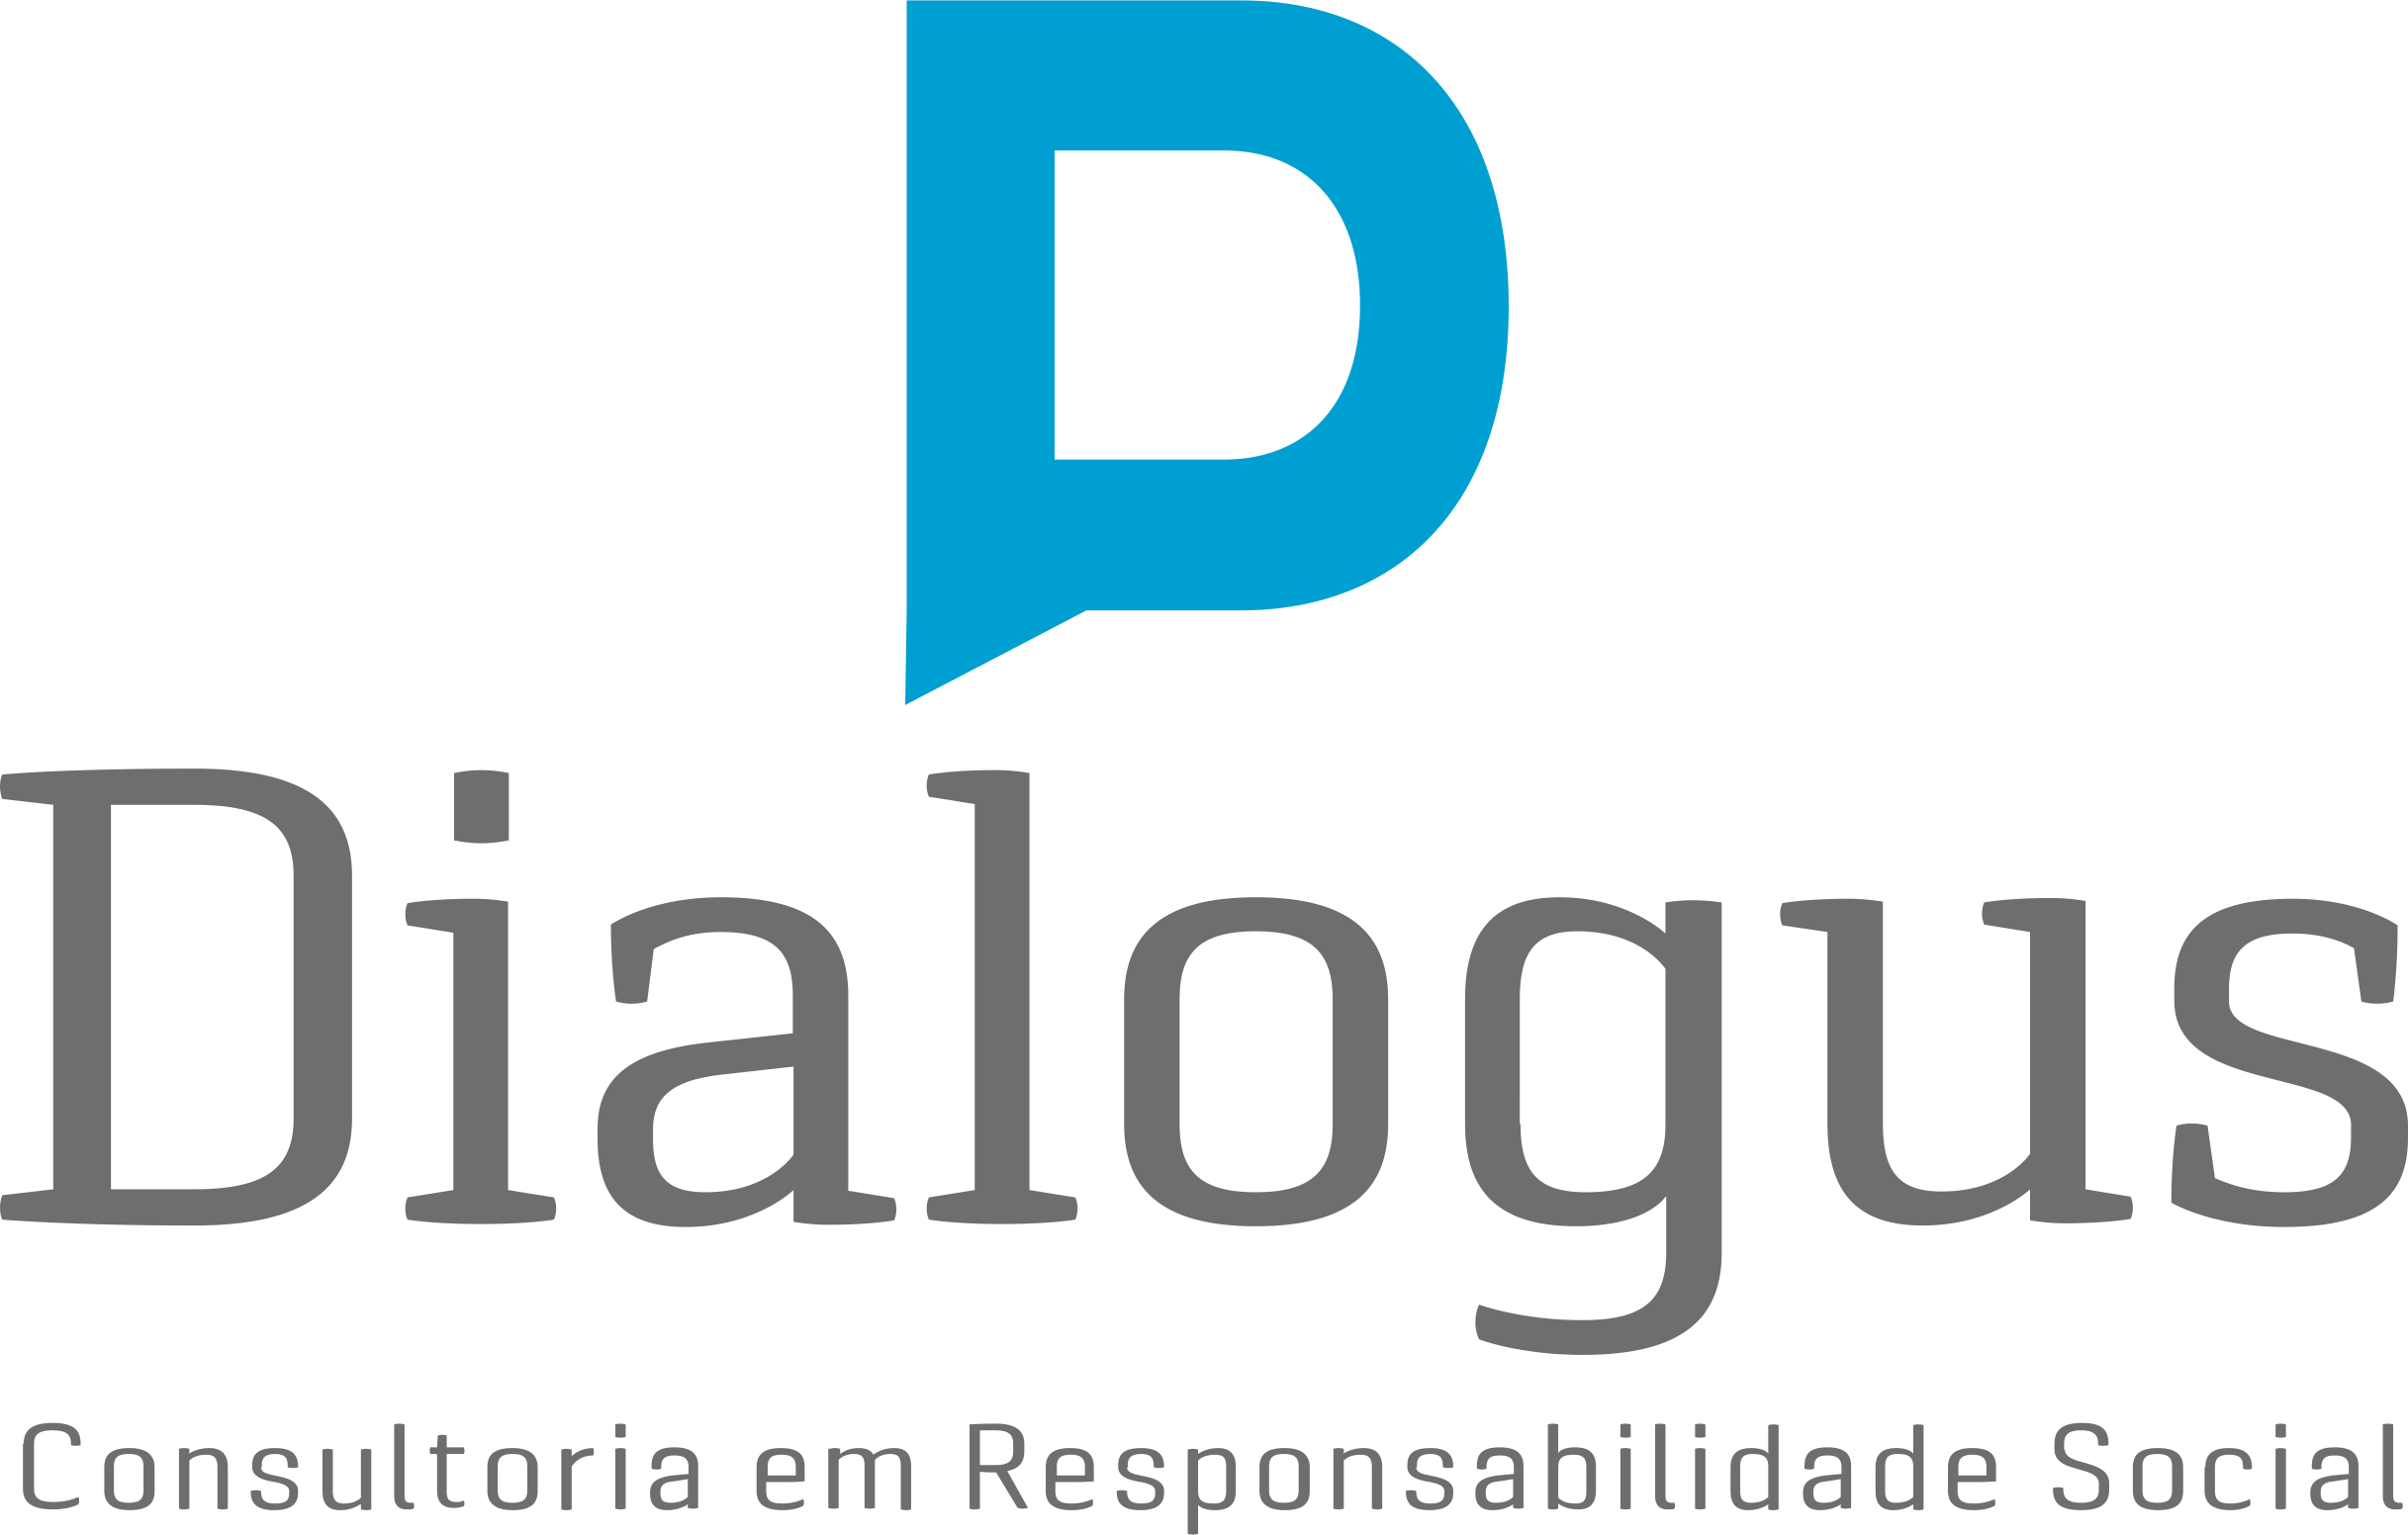 Dialogus Responsabilidade Social - Consultoria - Balanço Social - Fortaleza/CE